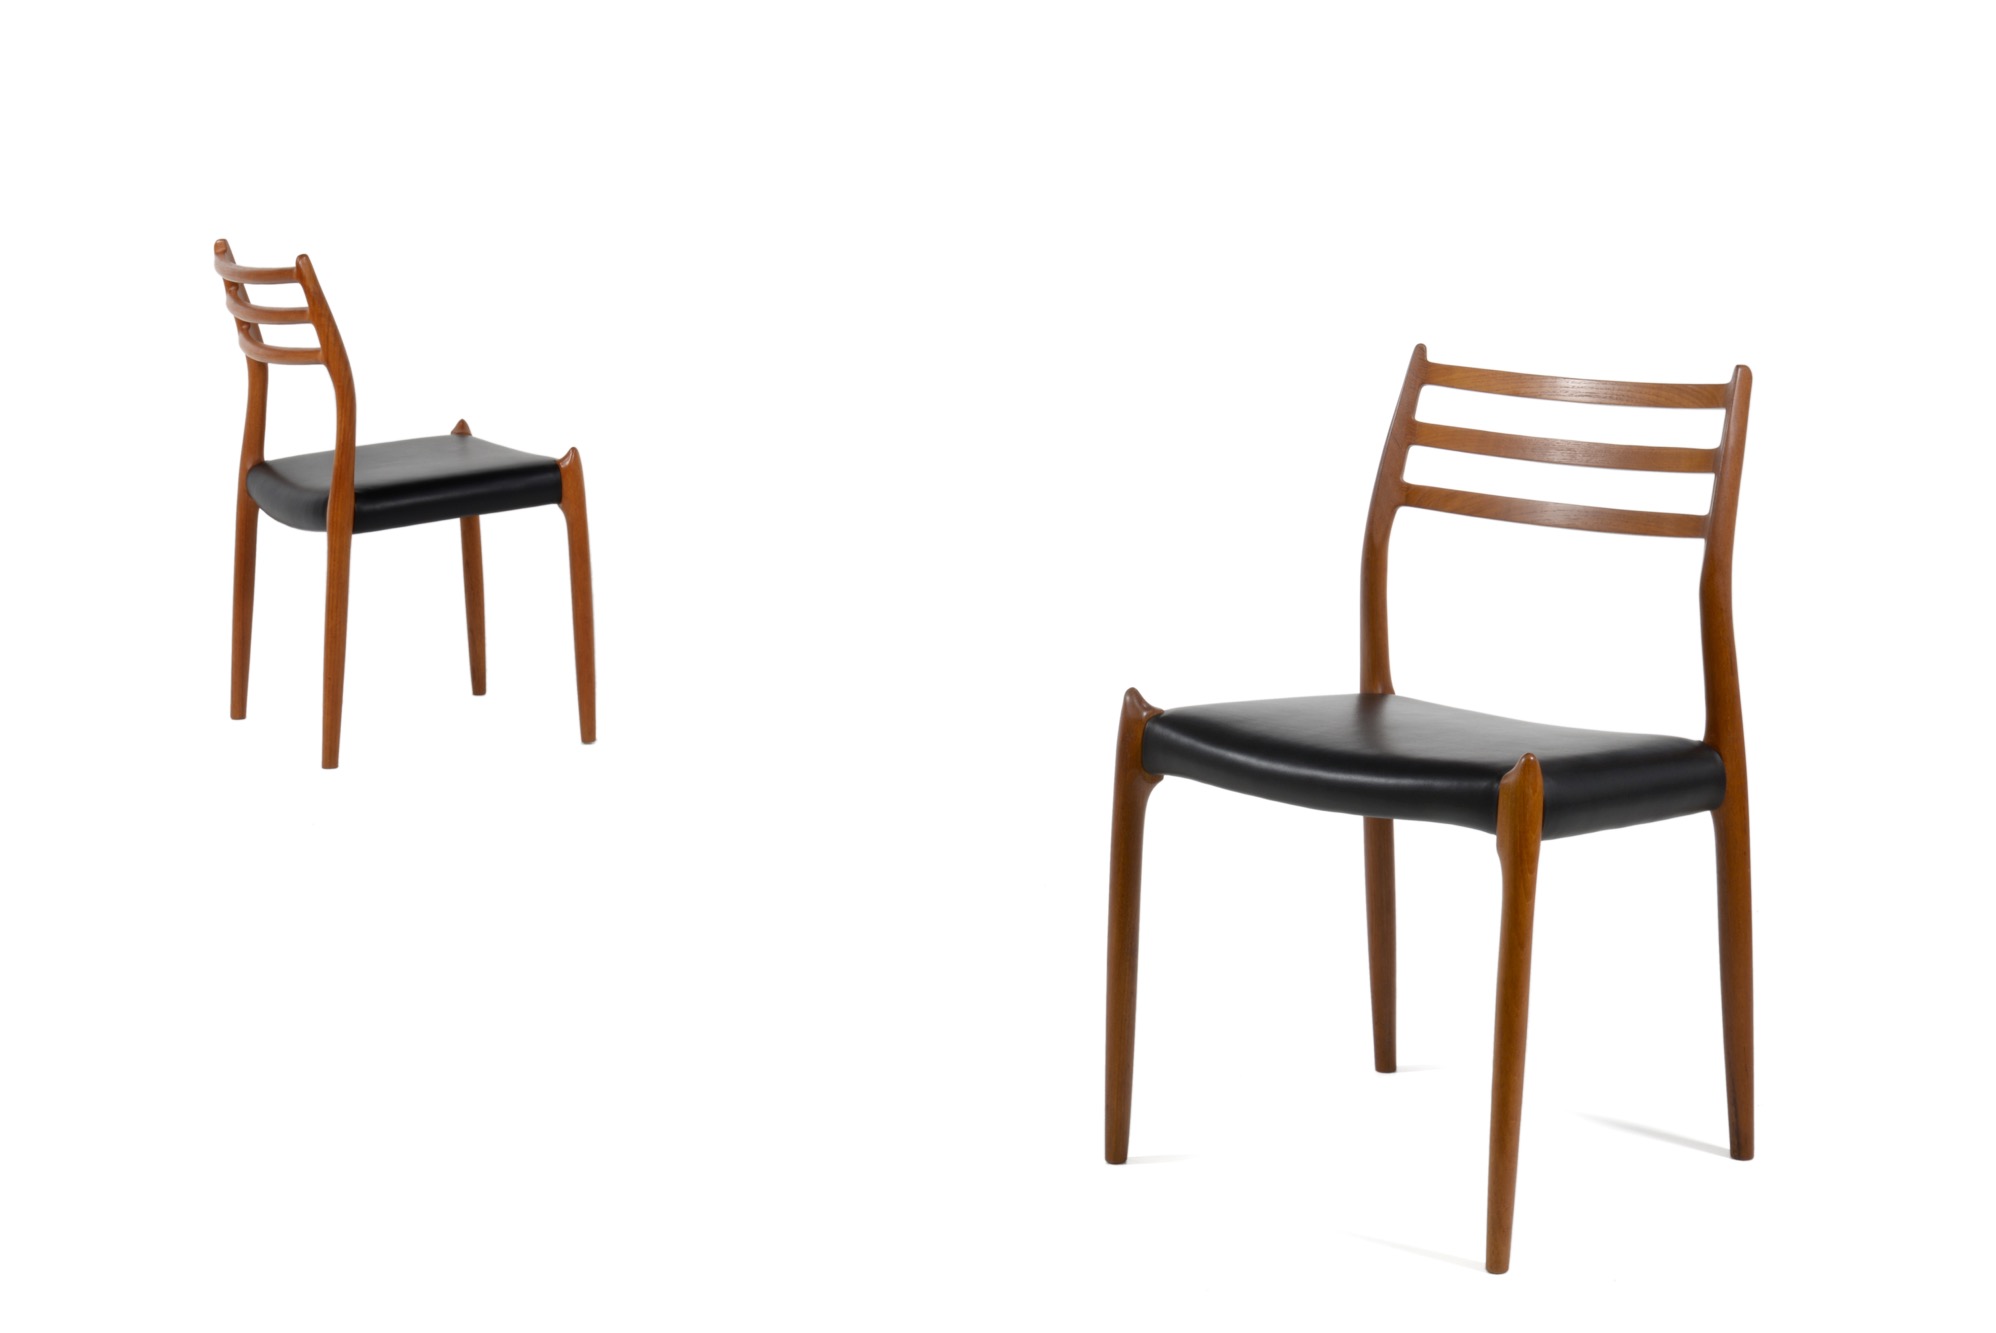 N.O. Møller / J.L. Møller “Model 78” Dining chair in Teak｜Luca 